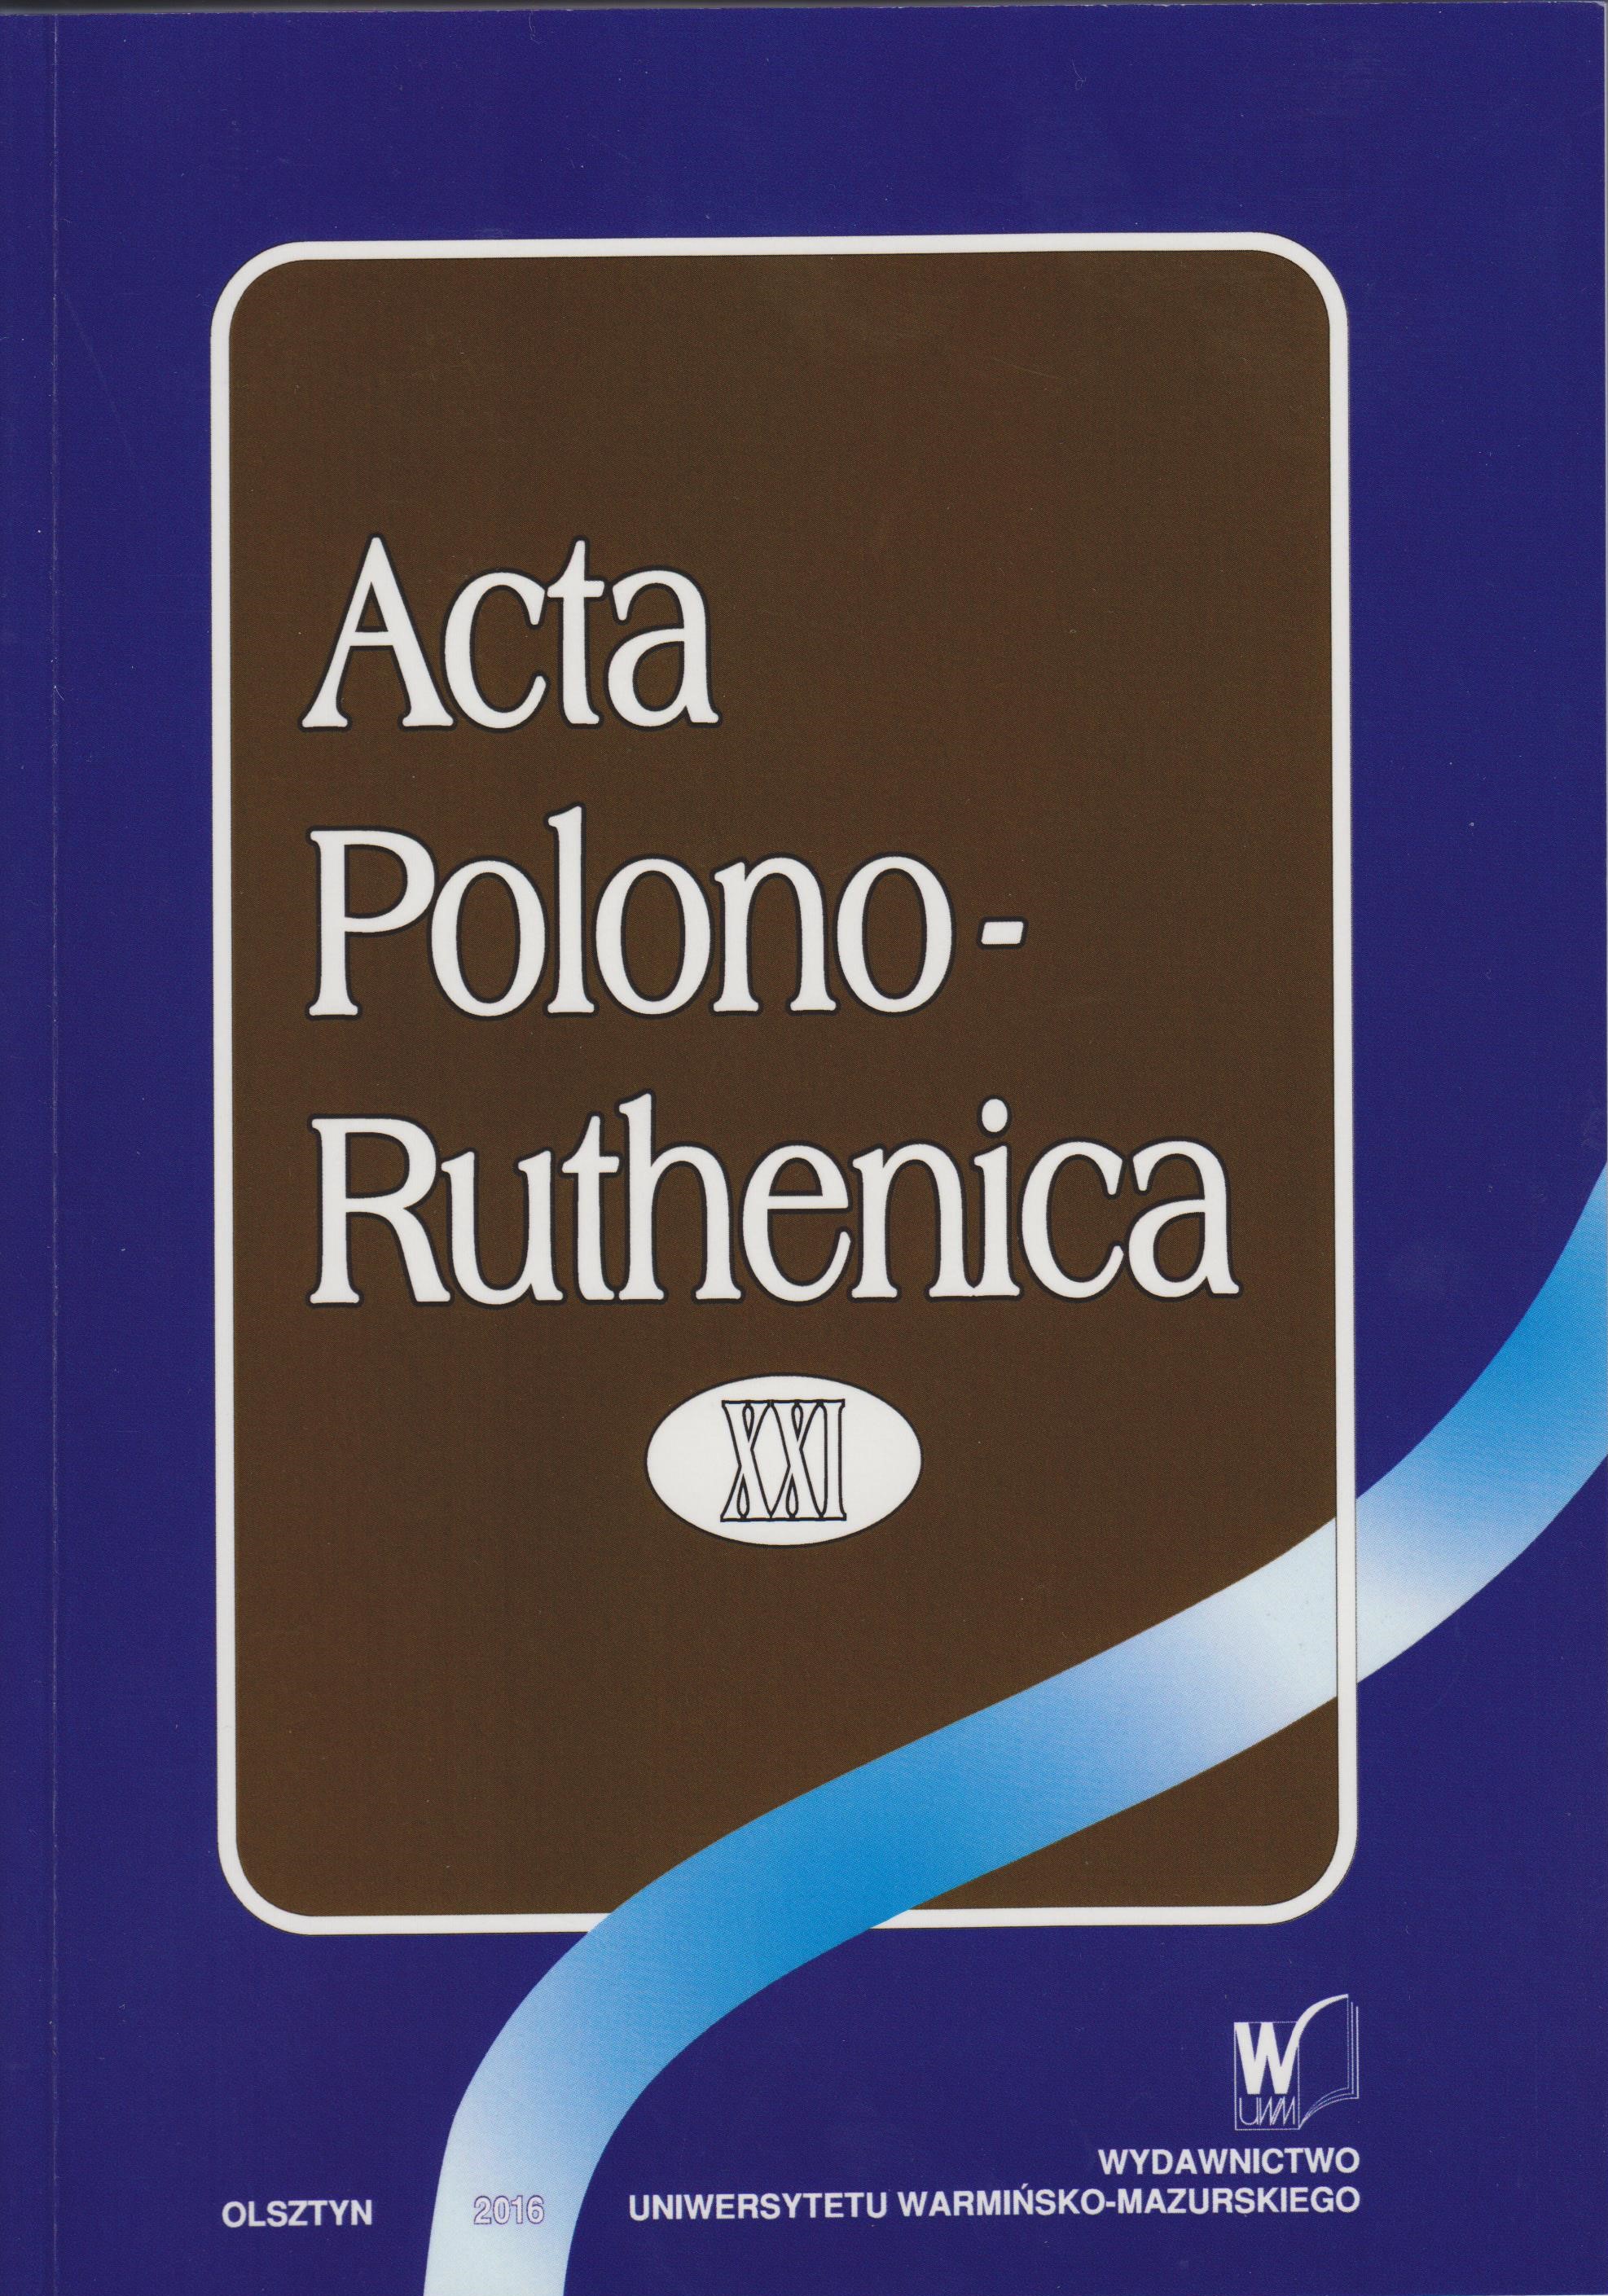 Acta Polono-Ruthenica